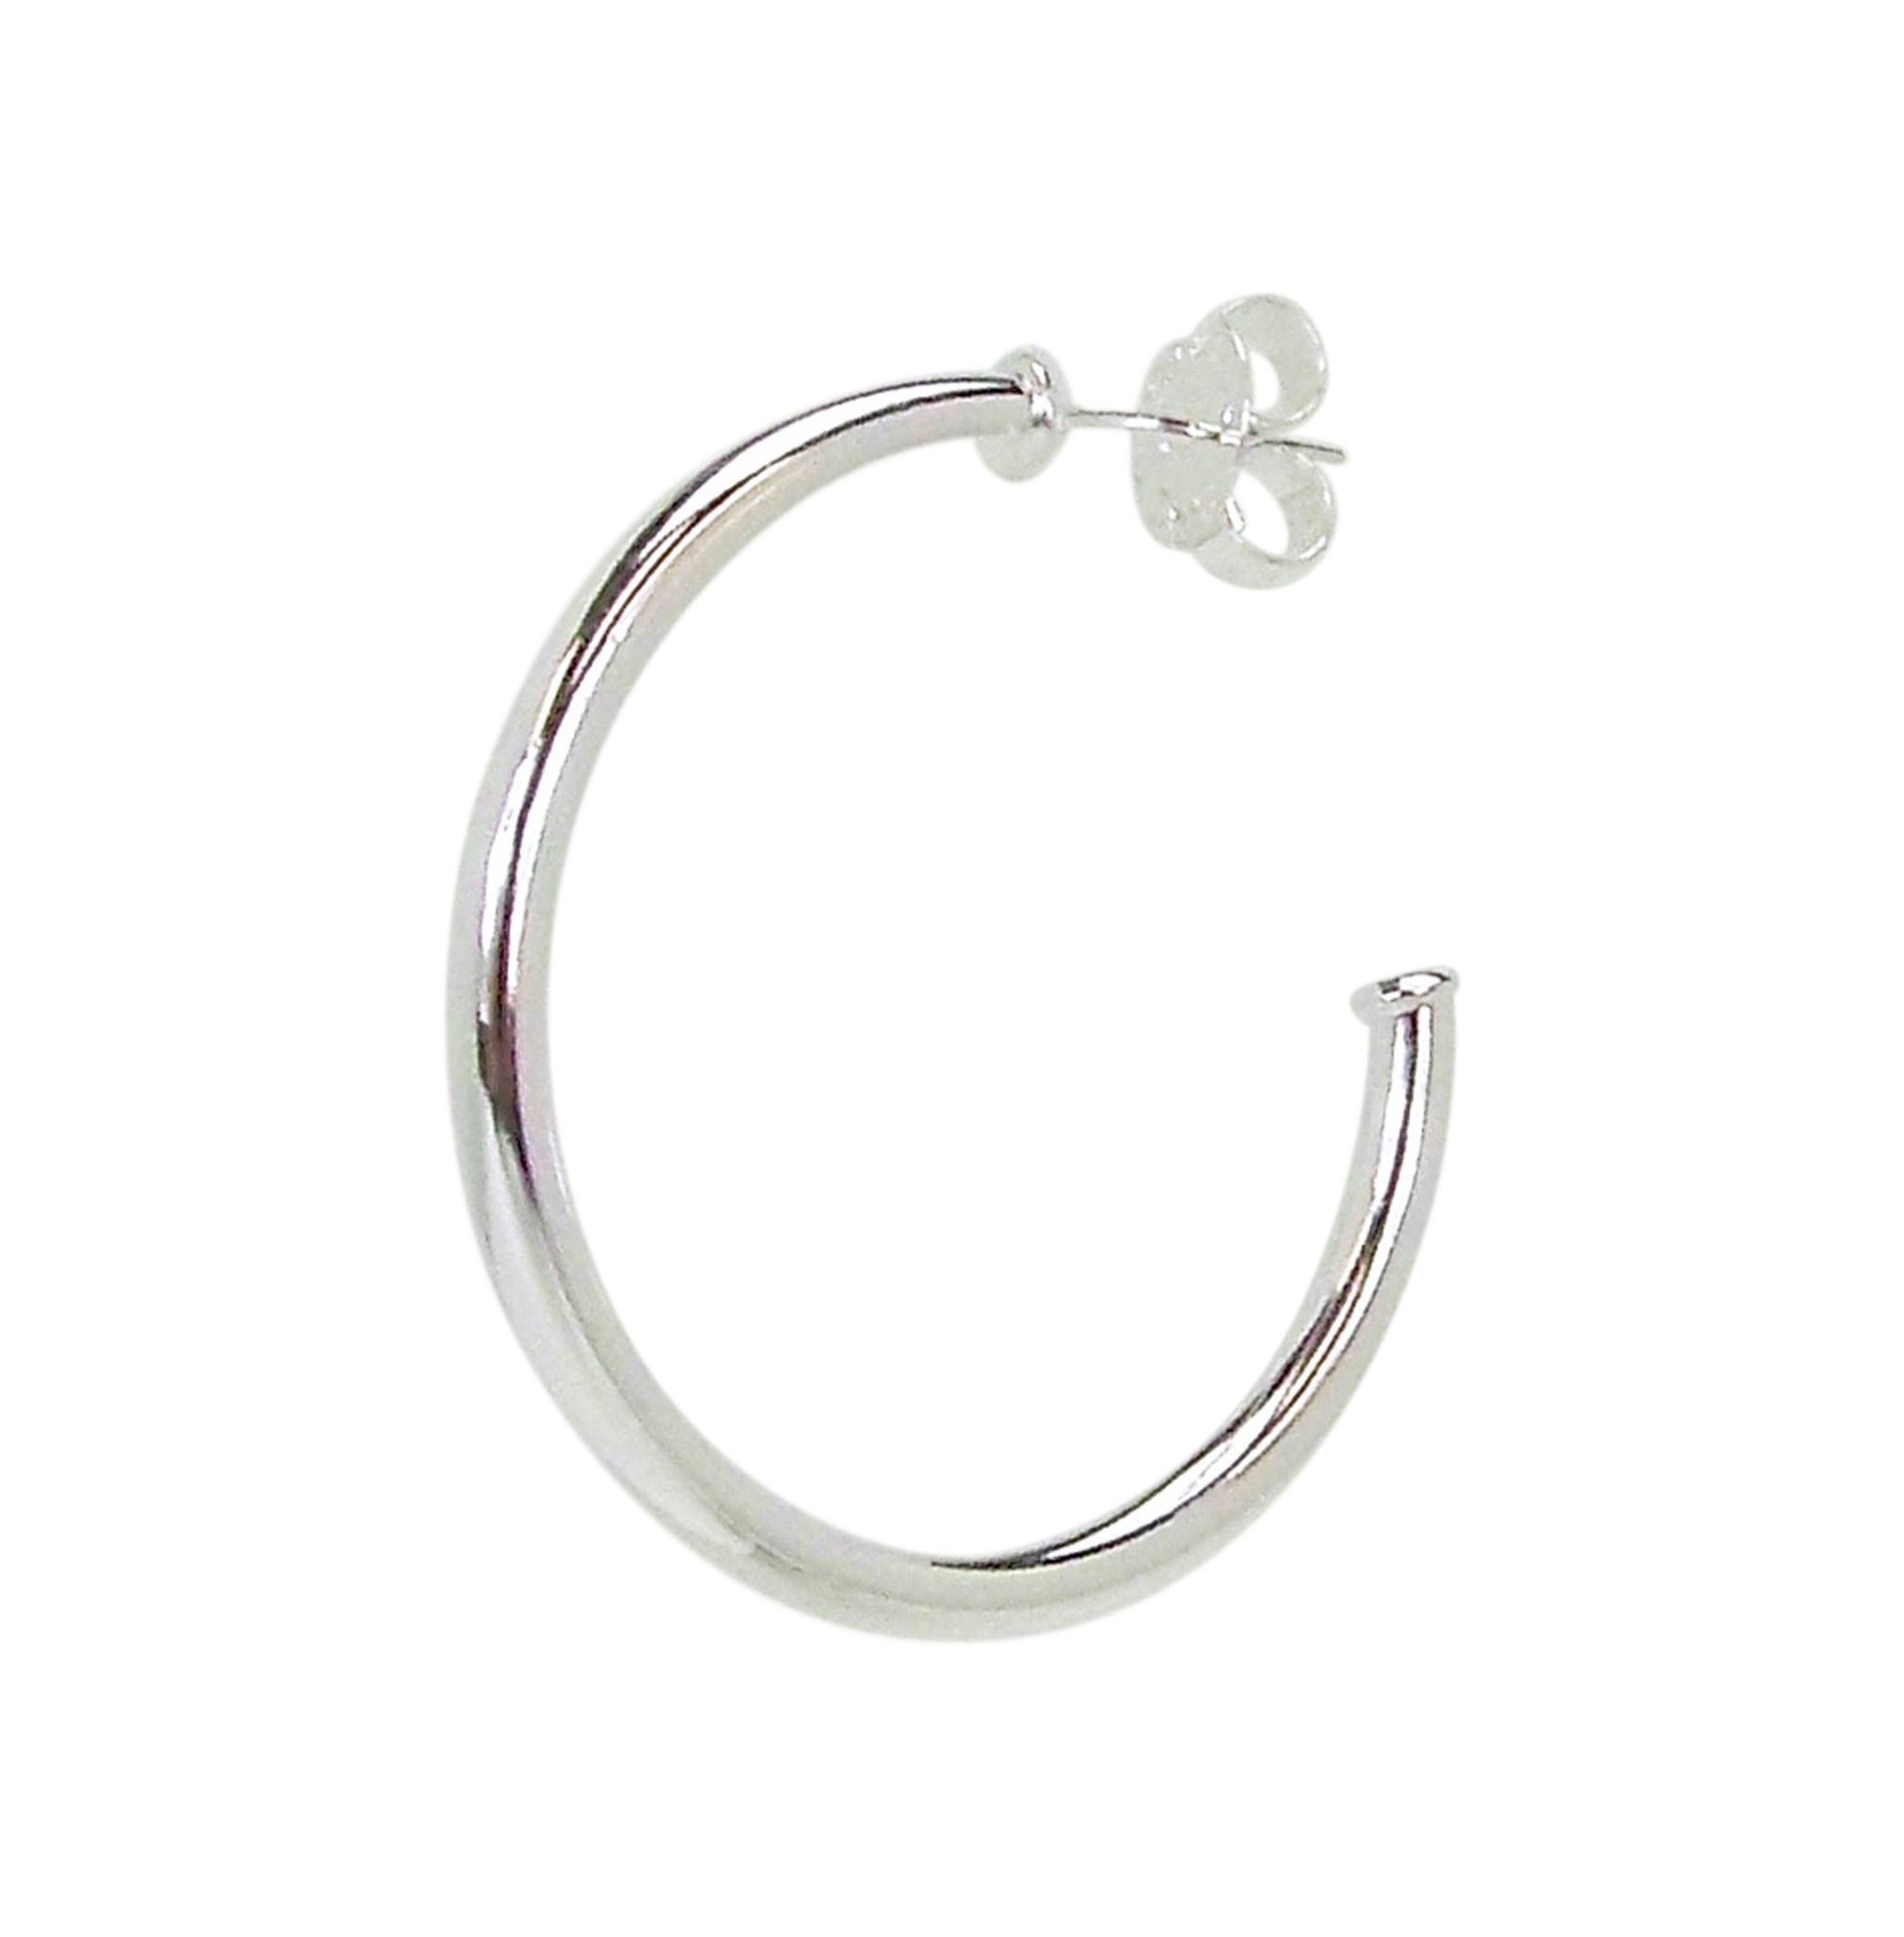 Sheila Fajl Petite Favorite Hoop Earrings in Polished Silver